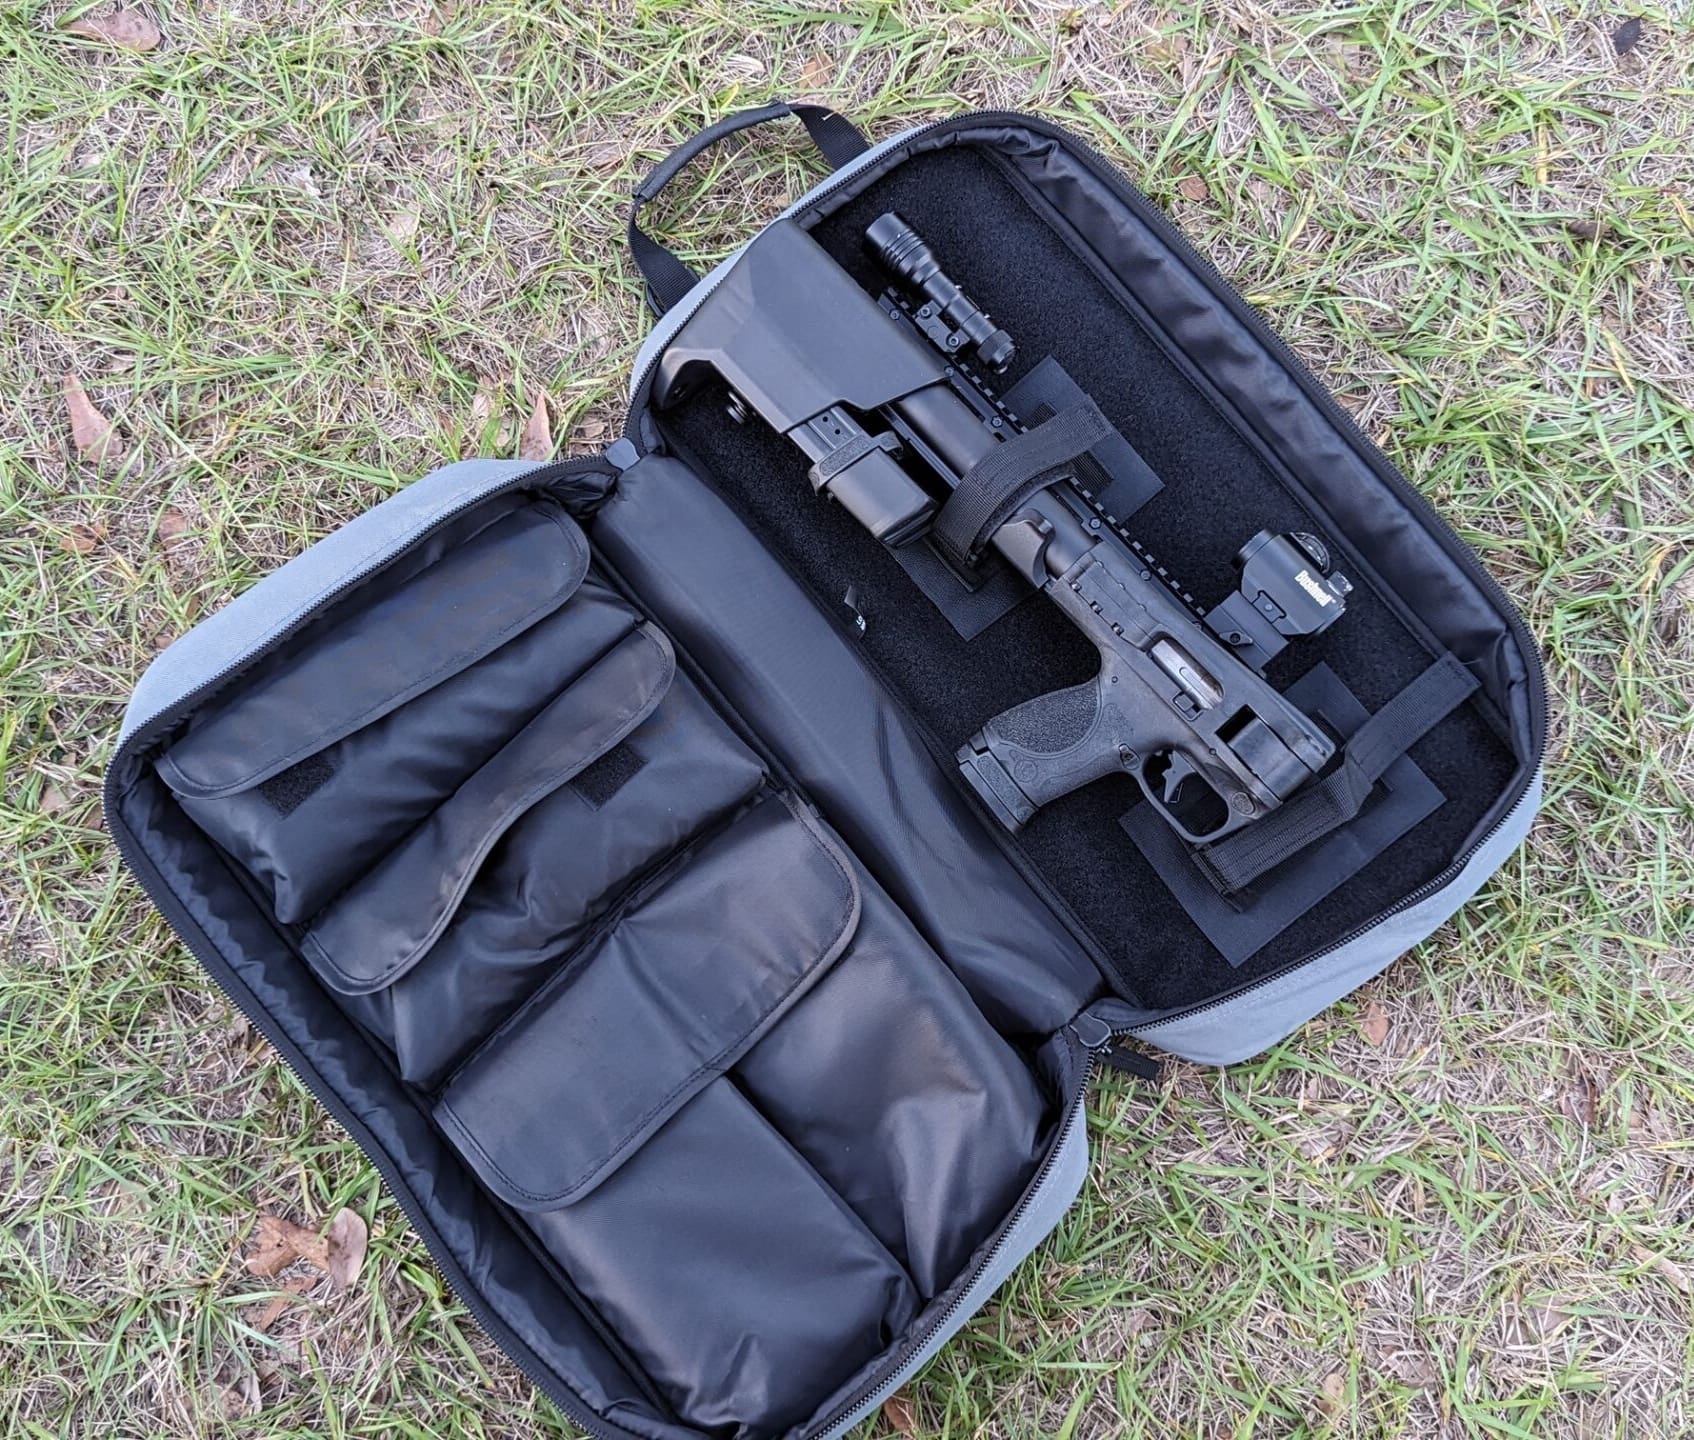 Smith & Wesson M&P FPC Folding Pistol Carbine